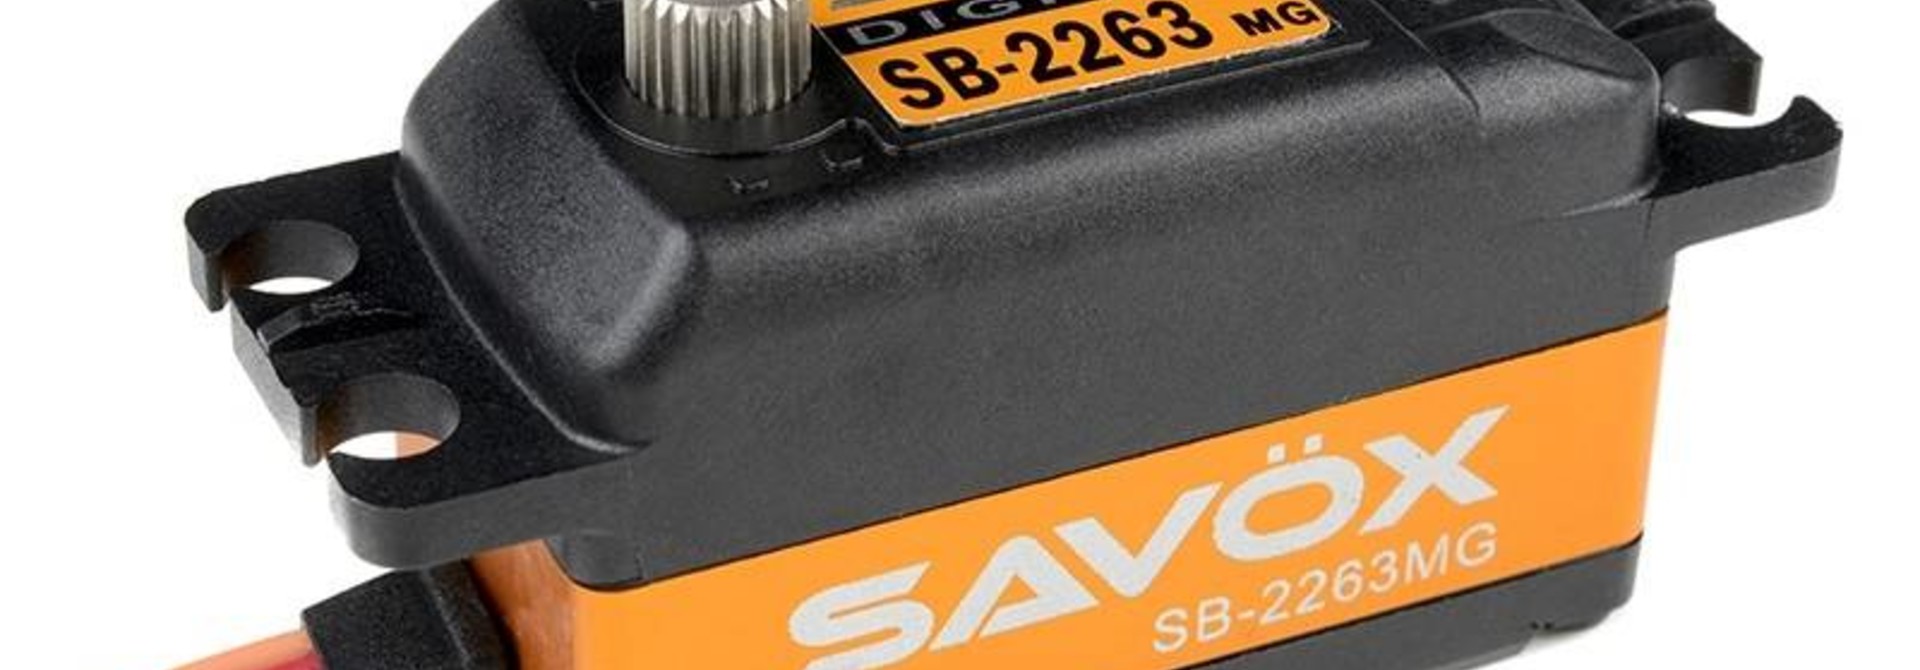 Savox - Servo - SB-2263MG - Digital - Brushless Motor - Metaal tandwielen